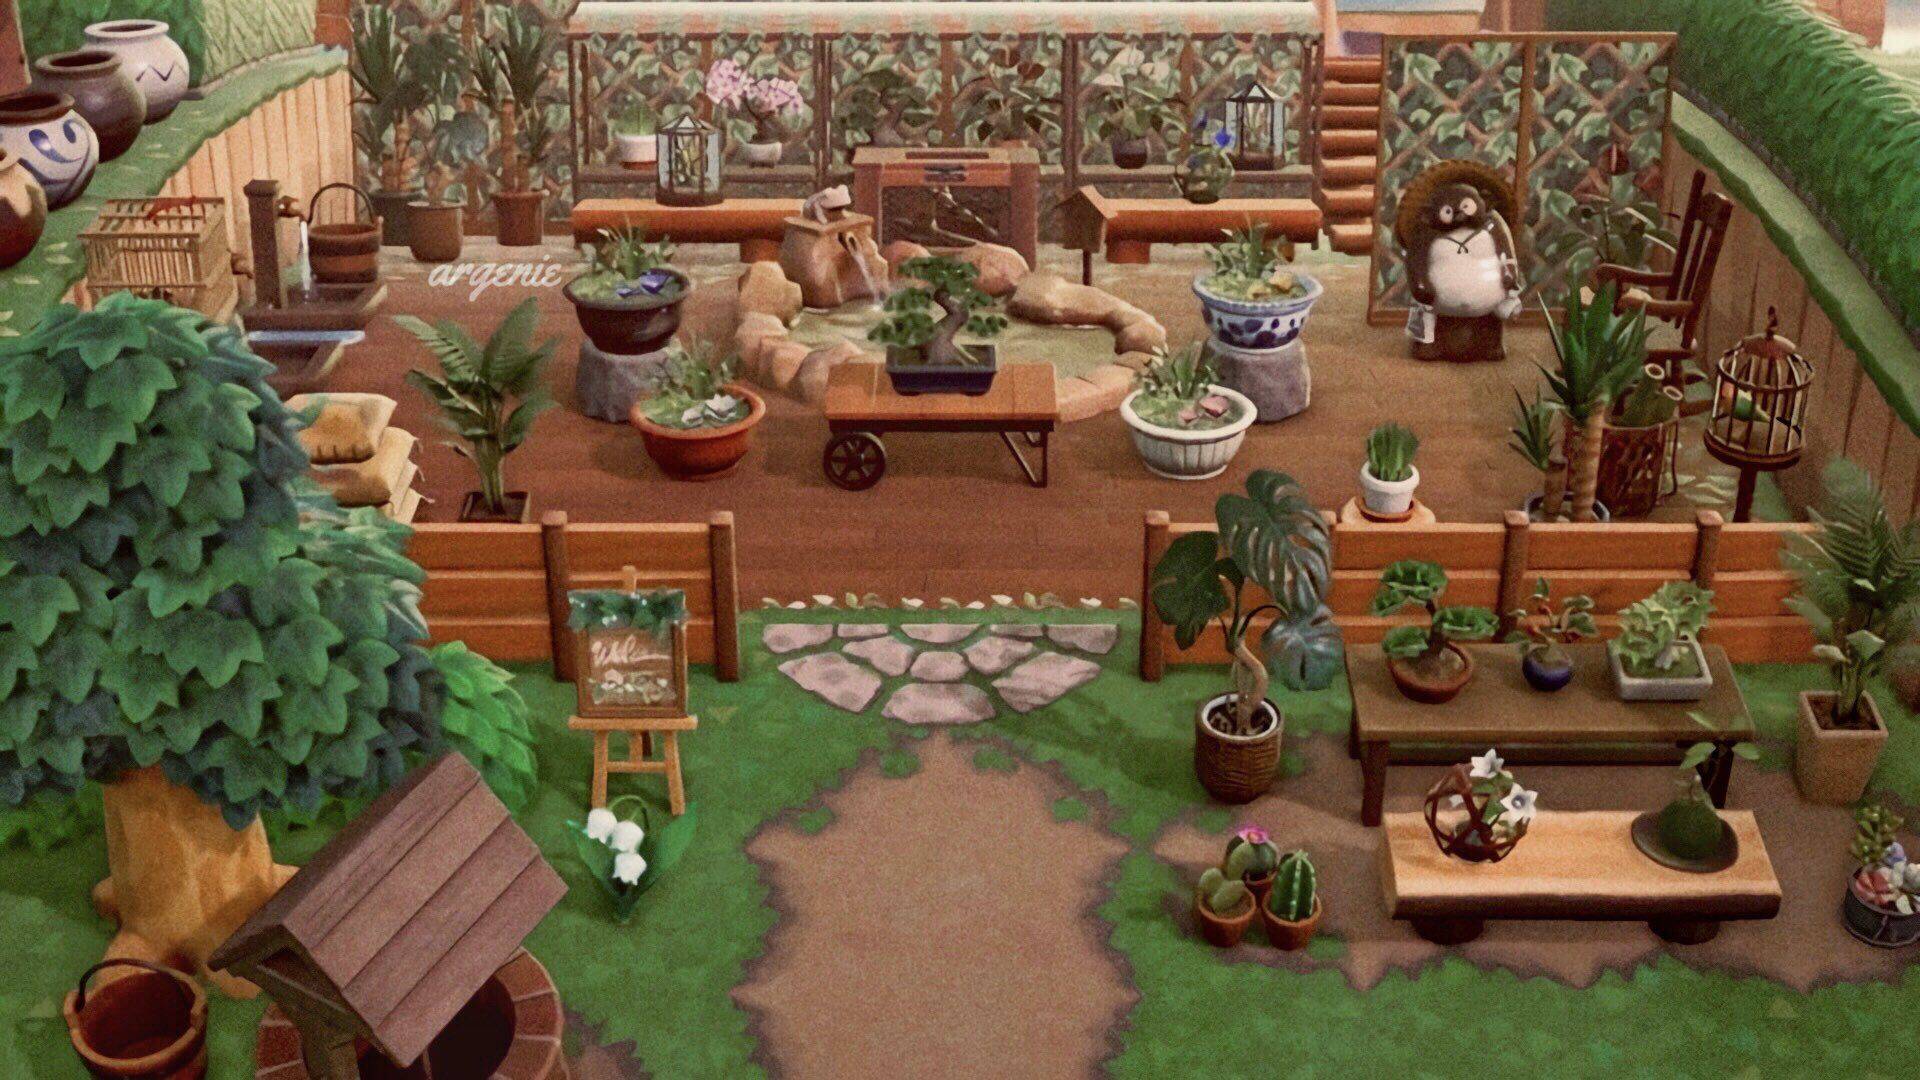 Animal Crossing Zen Garden